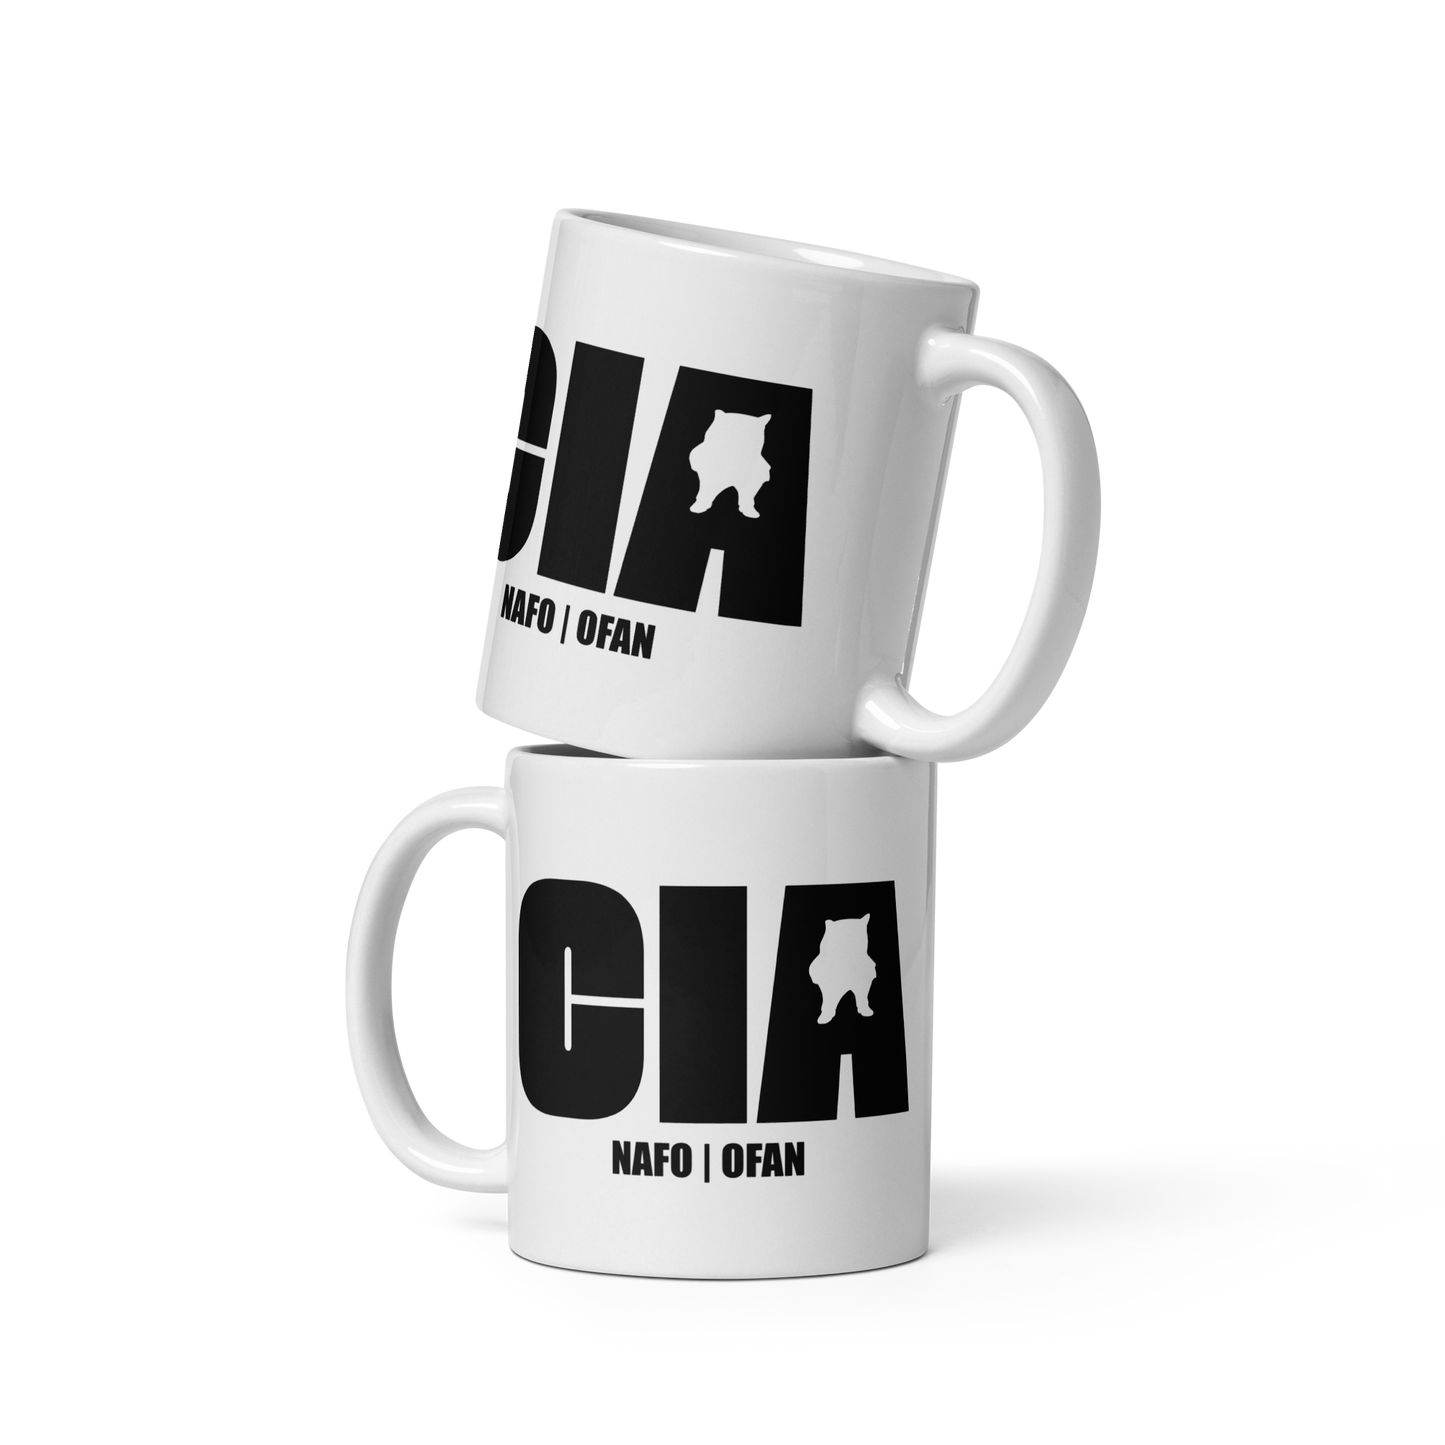 NAFO CIA Mug